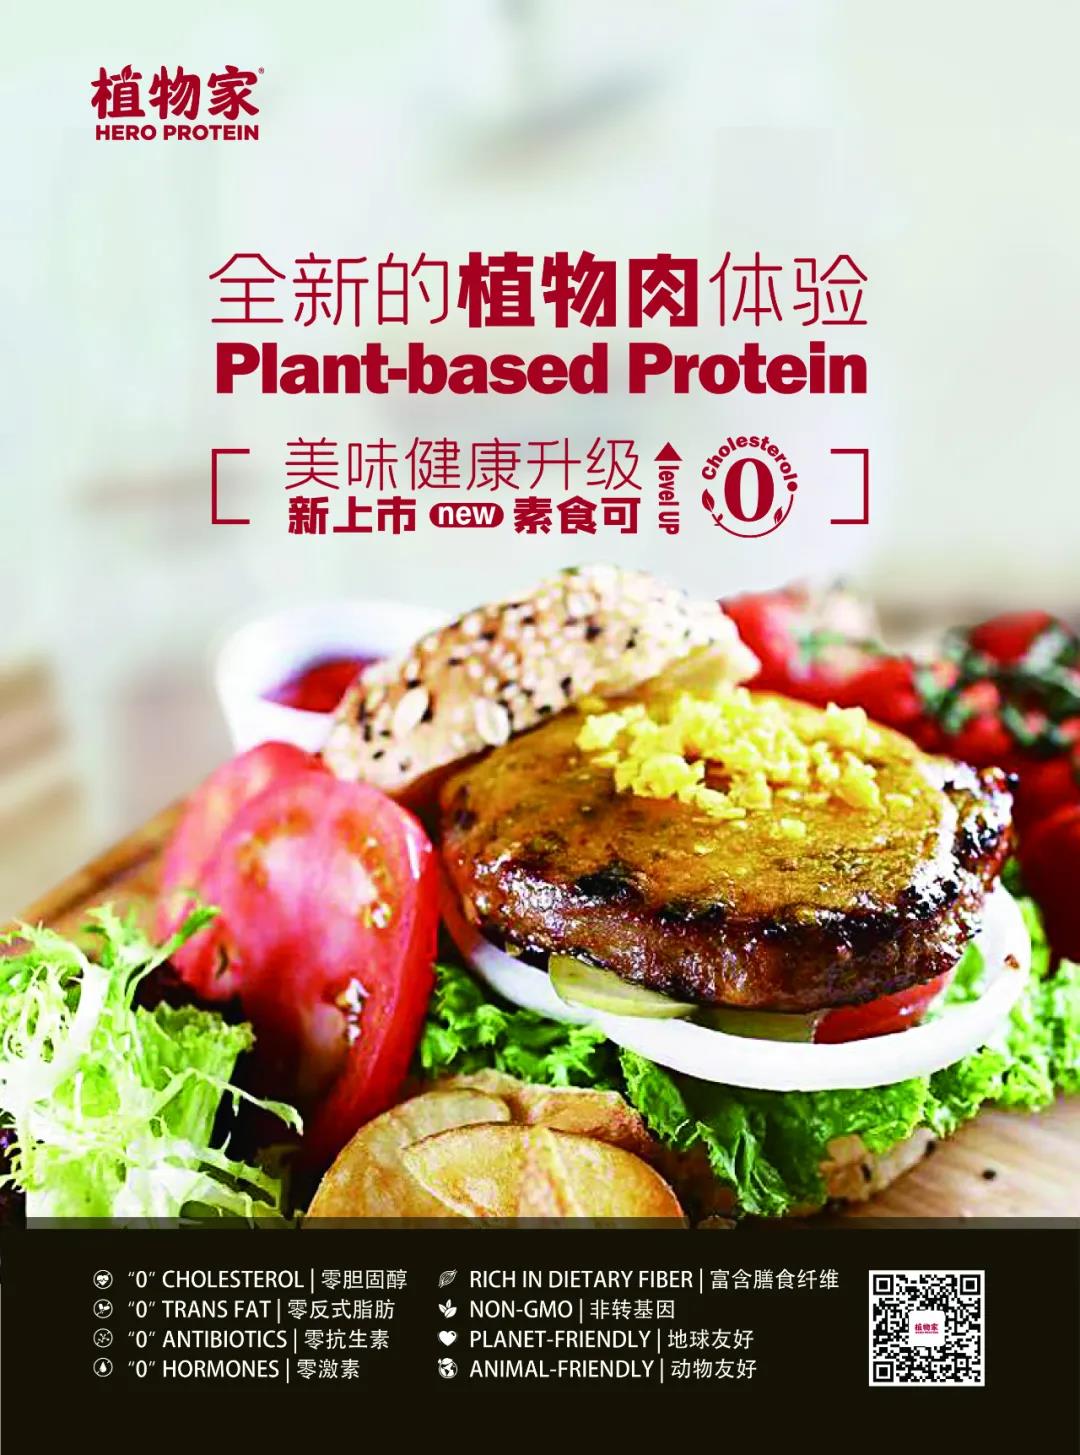 61 41 湿法拉丝植物肉品牌“植物家HERO” 正式登录多家餐厅、超市门店